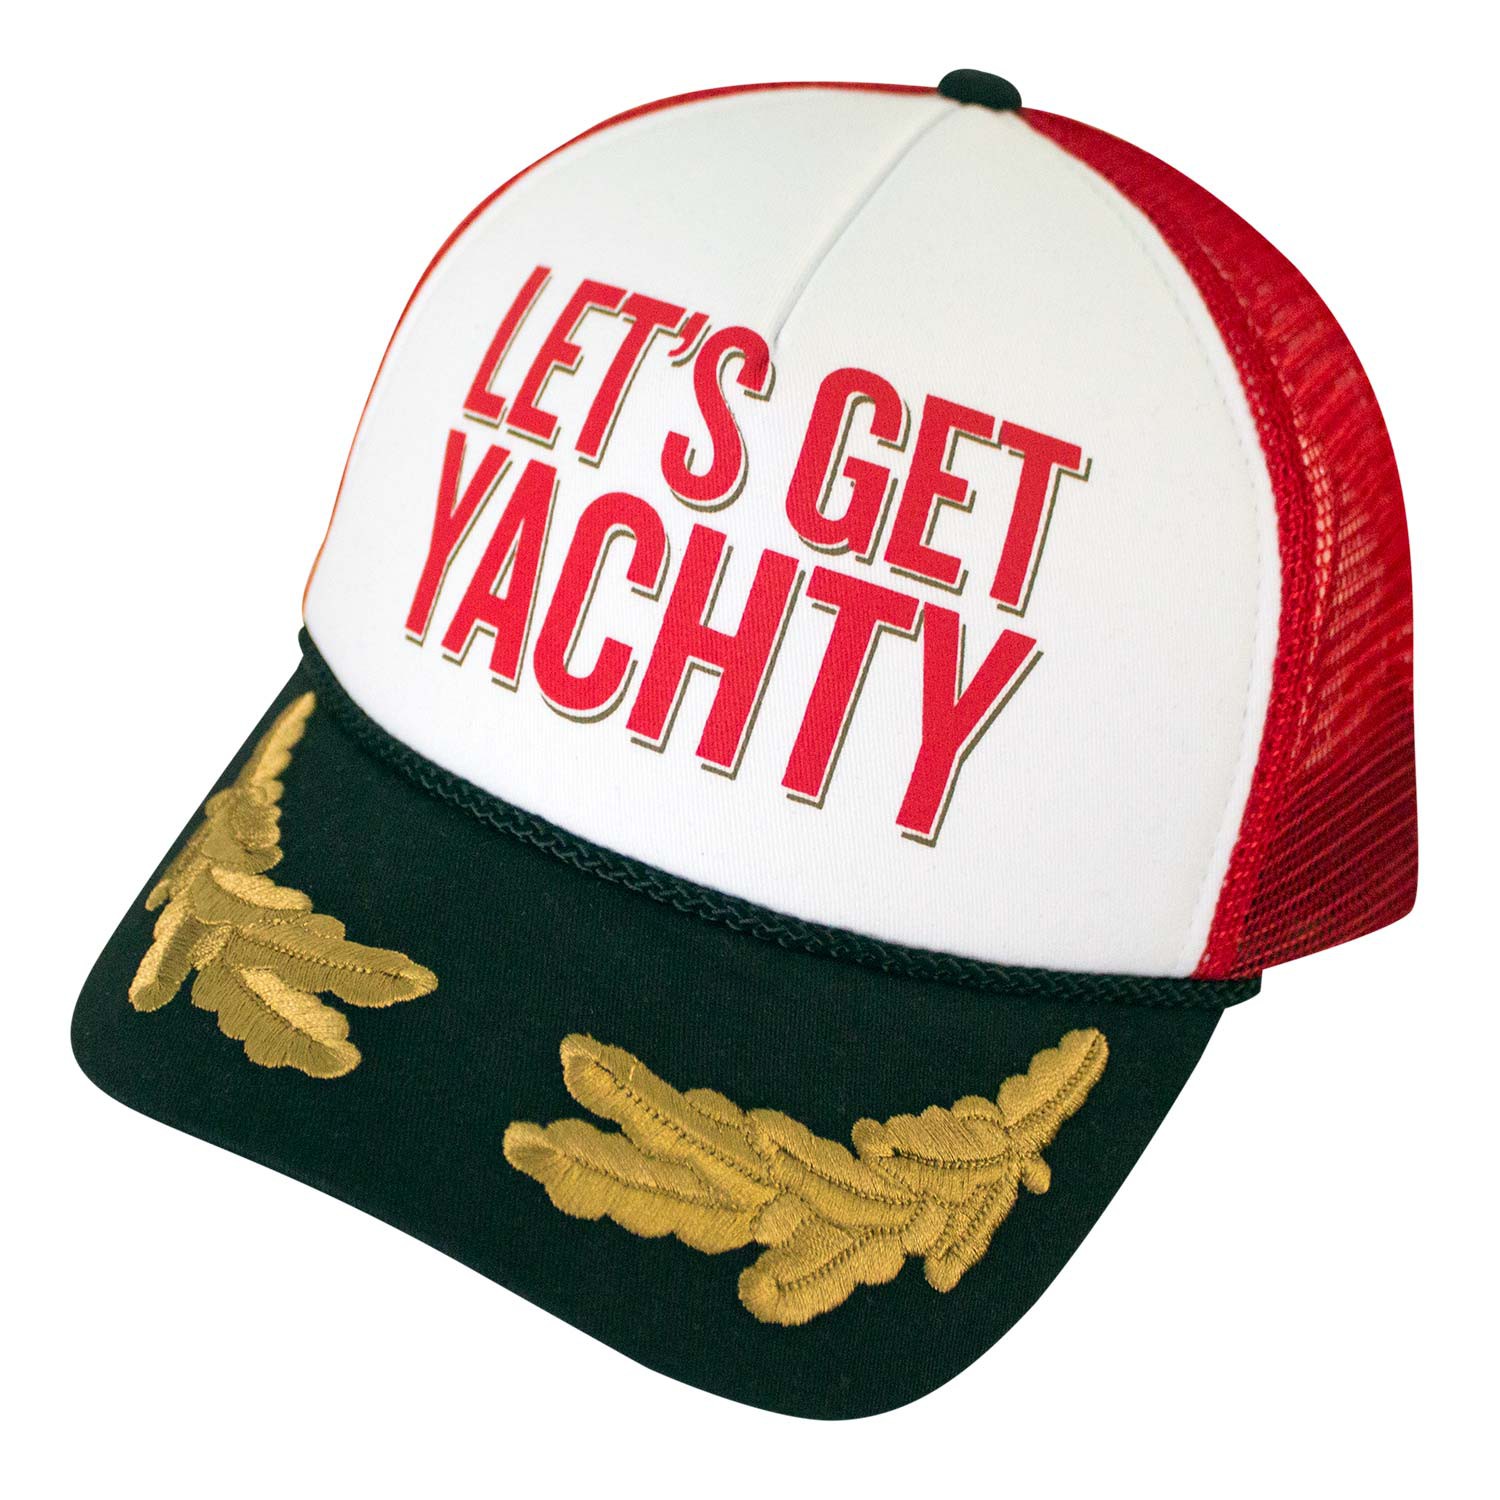 Captain Morgan Let's Get Yachty Men's Hat